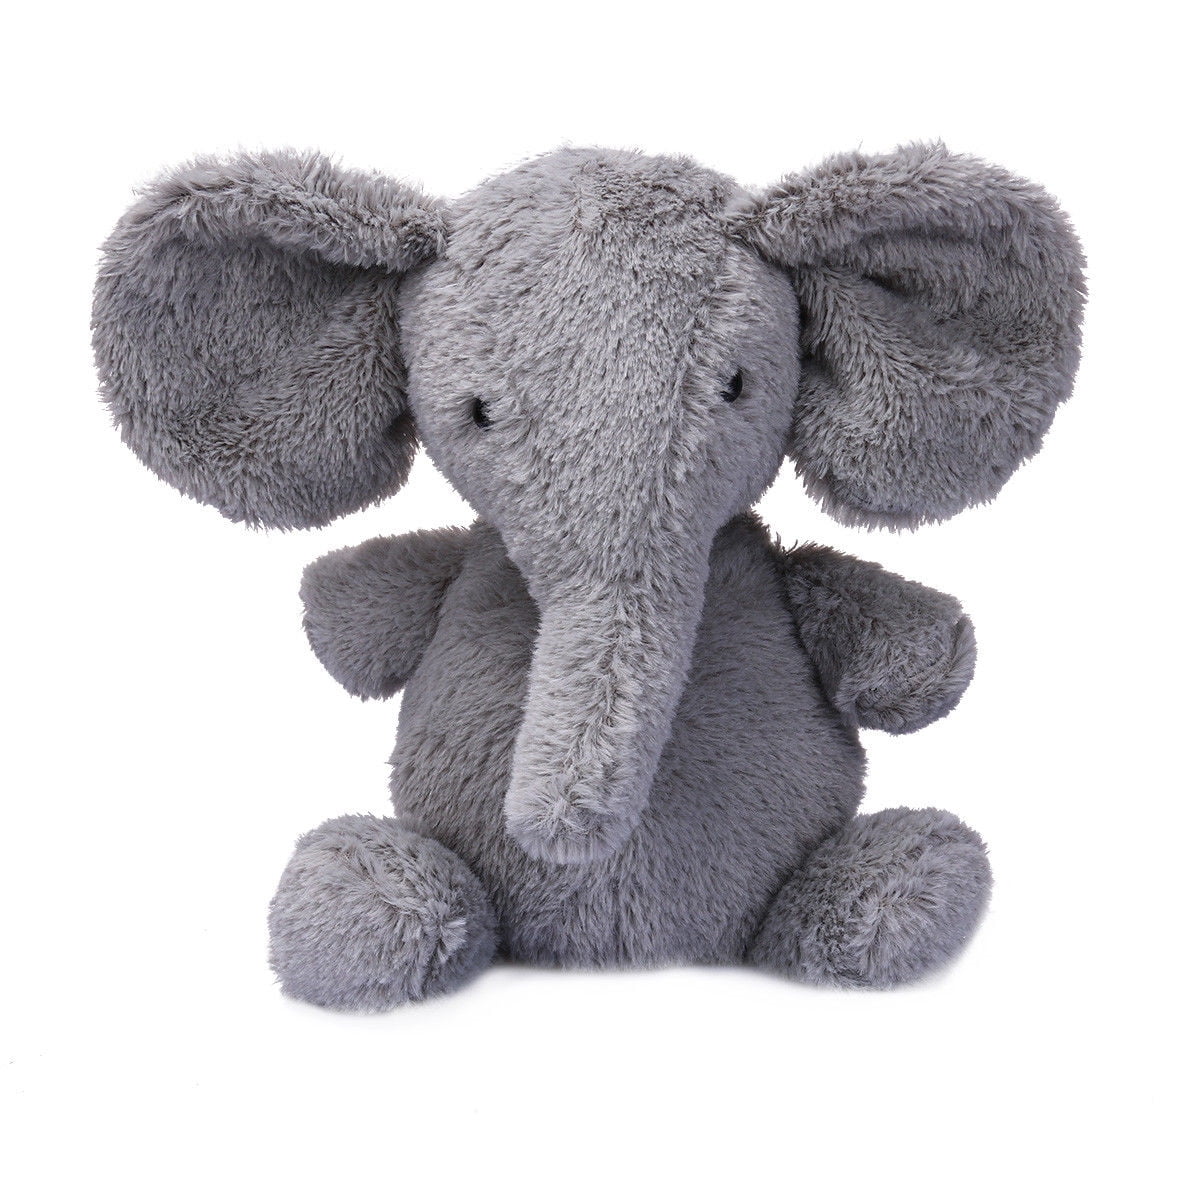 Kids Grey Aichie TCBunny Baby Elephant Bedtime Stuffed Animal Plush Toy 11 